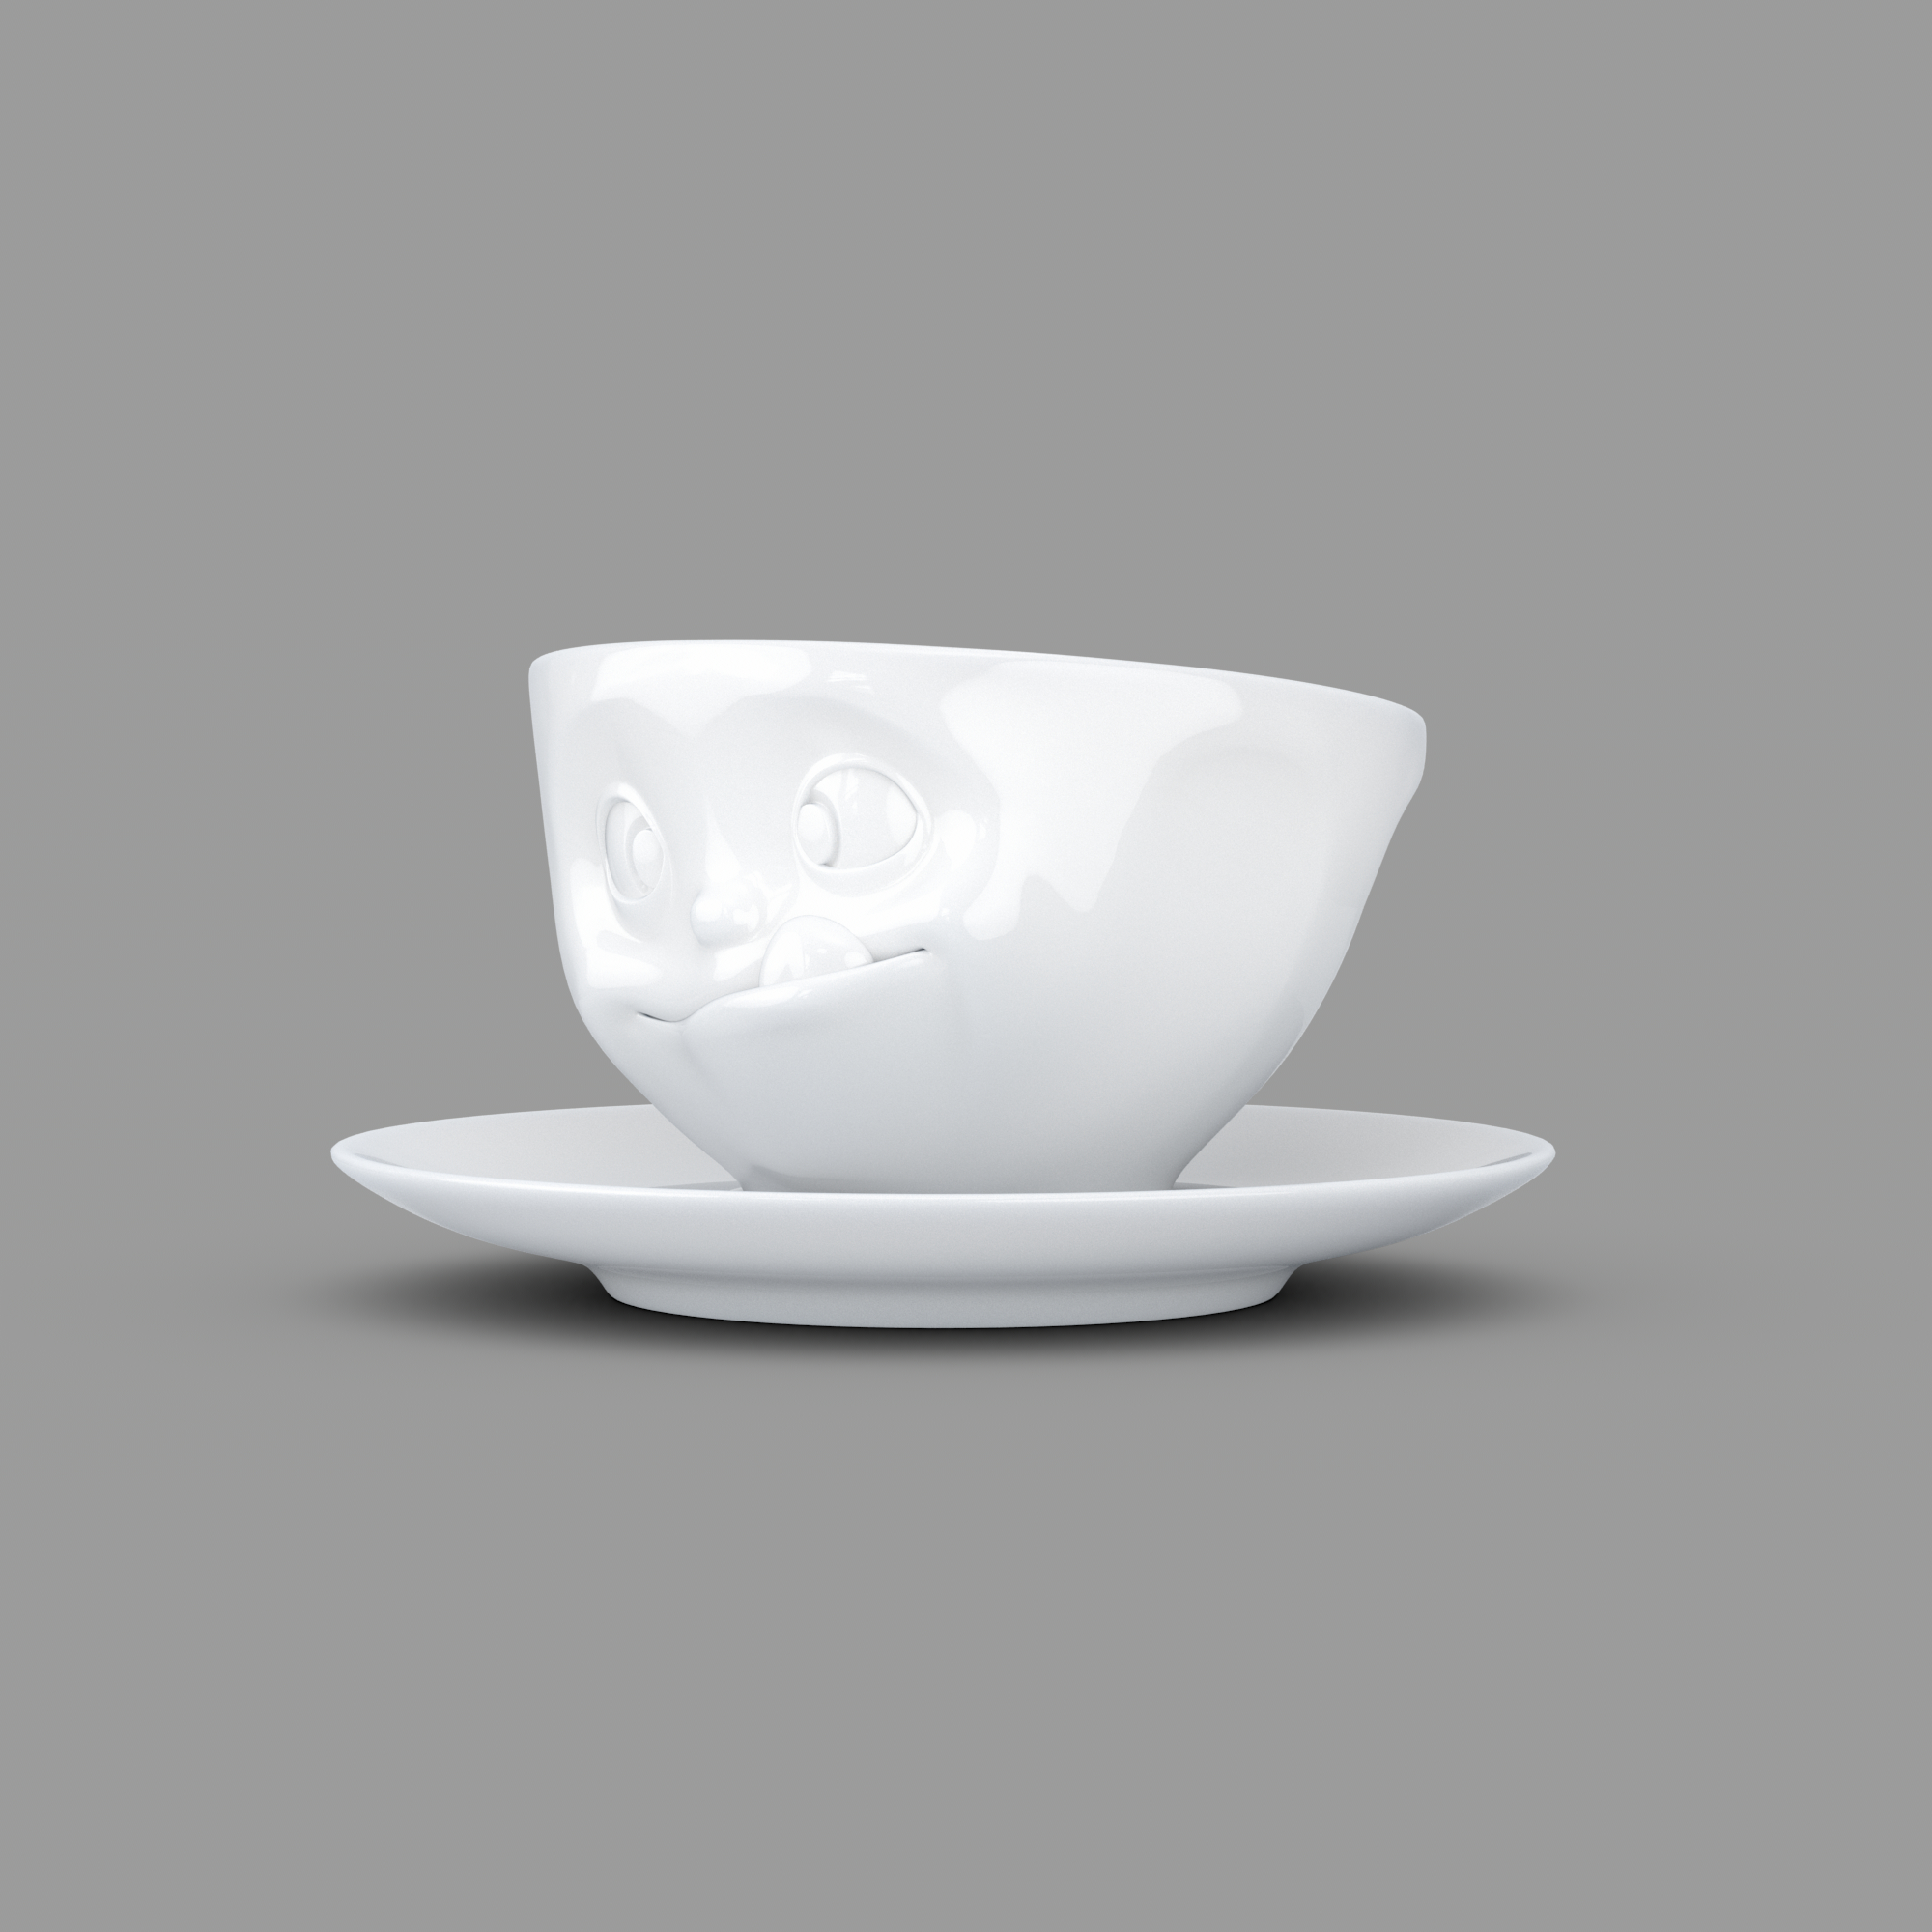 FIFTYEIGHT - Kaffeetasse lecker weiß